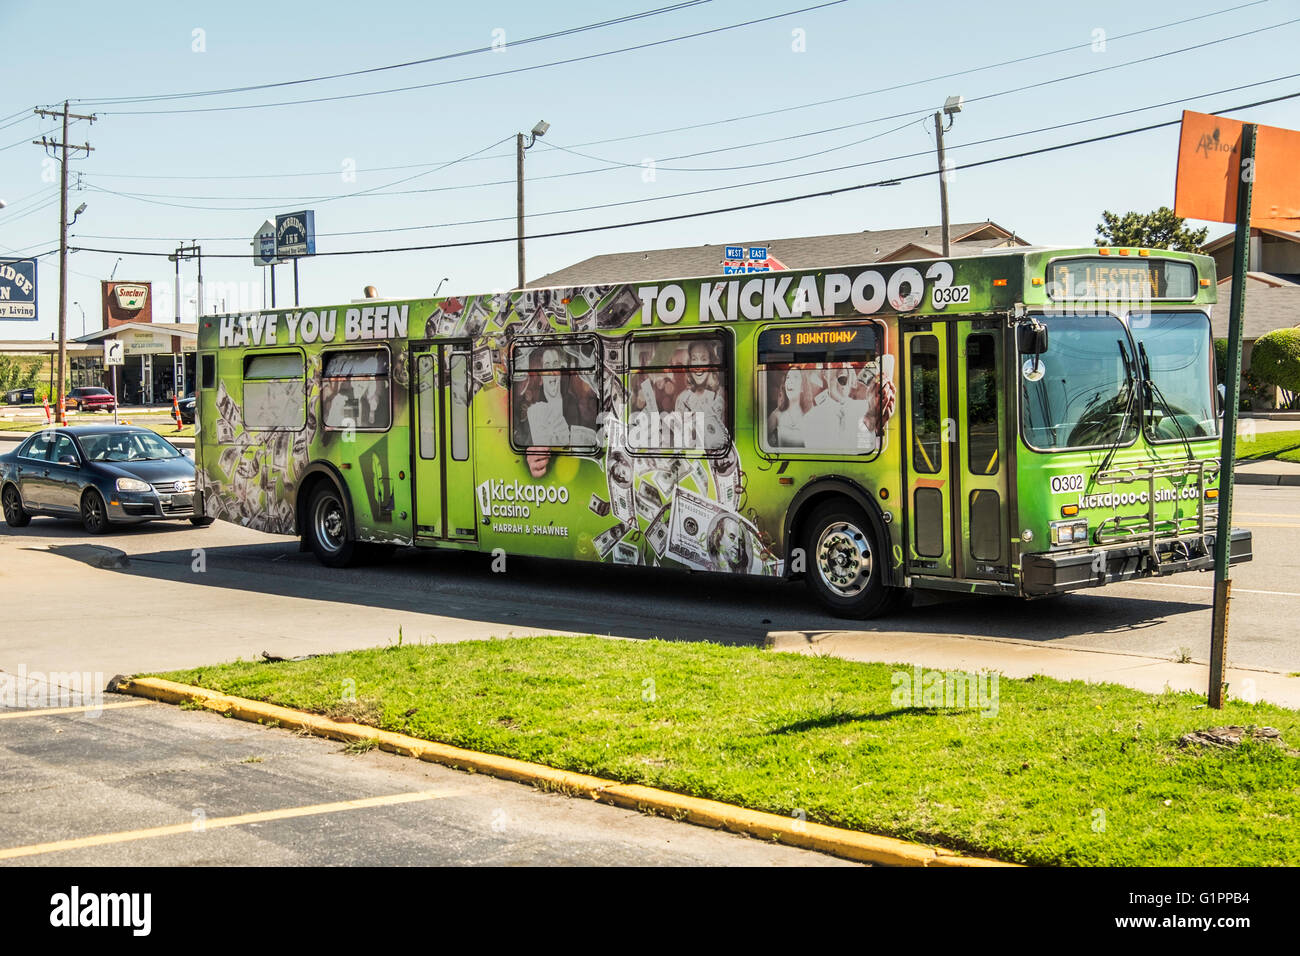 Un Oklahoma City trasporto pubblico autobus su una strada. Pubblicità Kickapoo Casino. Oklahoma, Stati Uniti d'America. Foto Stock